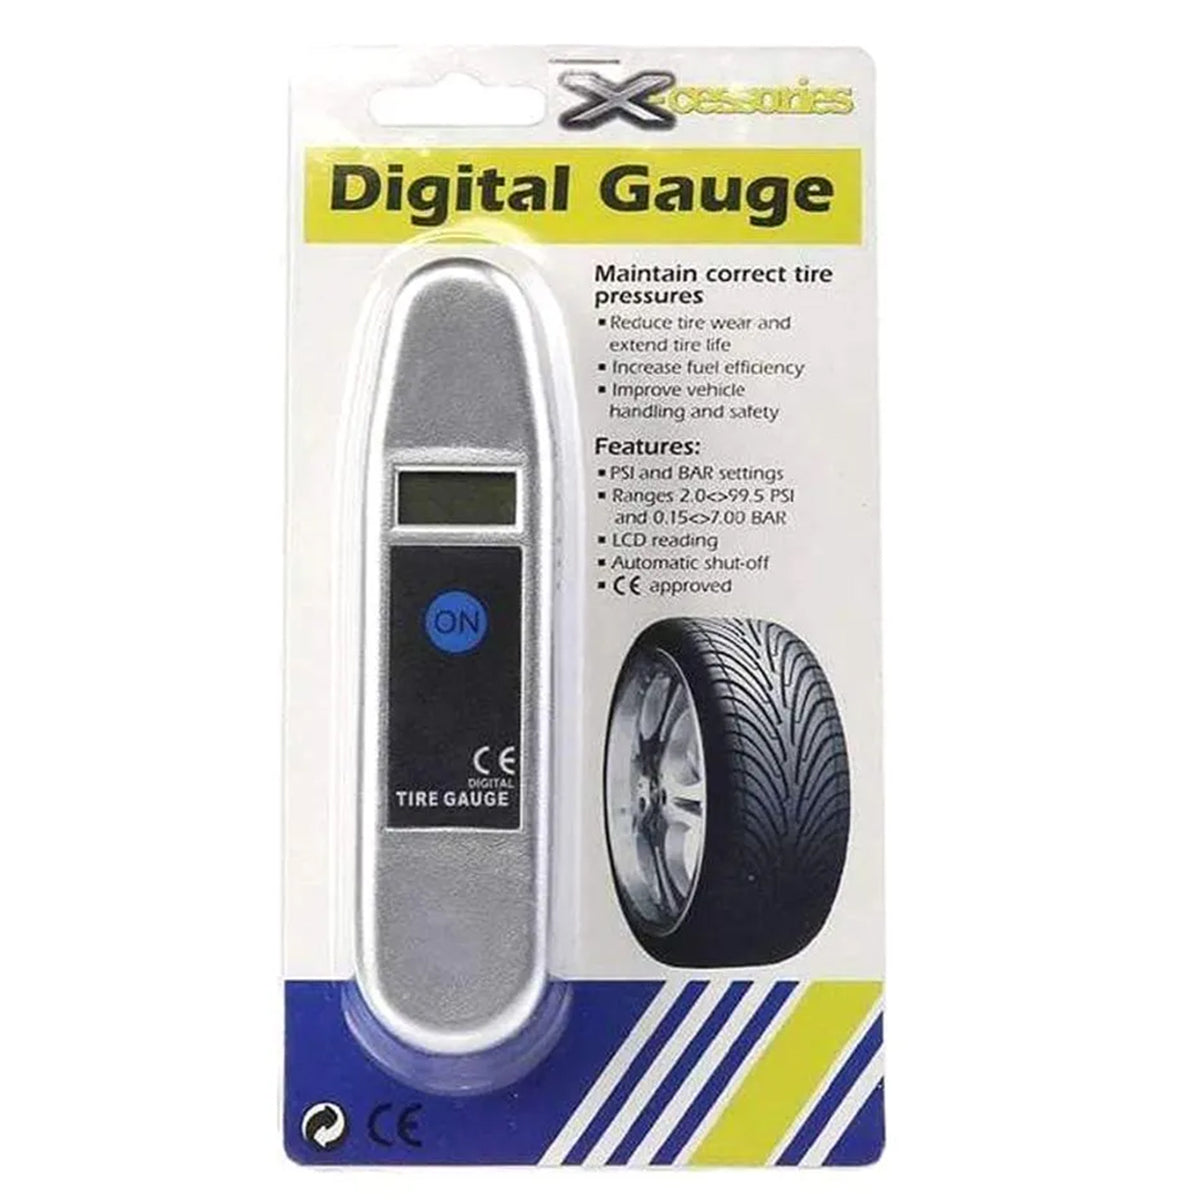 Digital Car tire gauge Display: 25 mm LCD